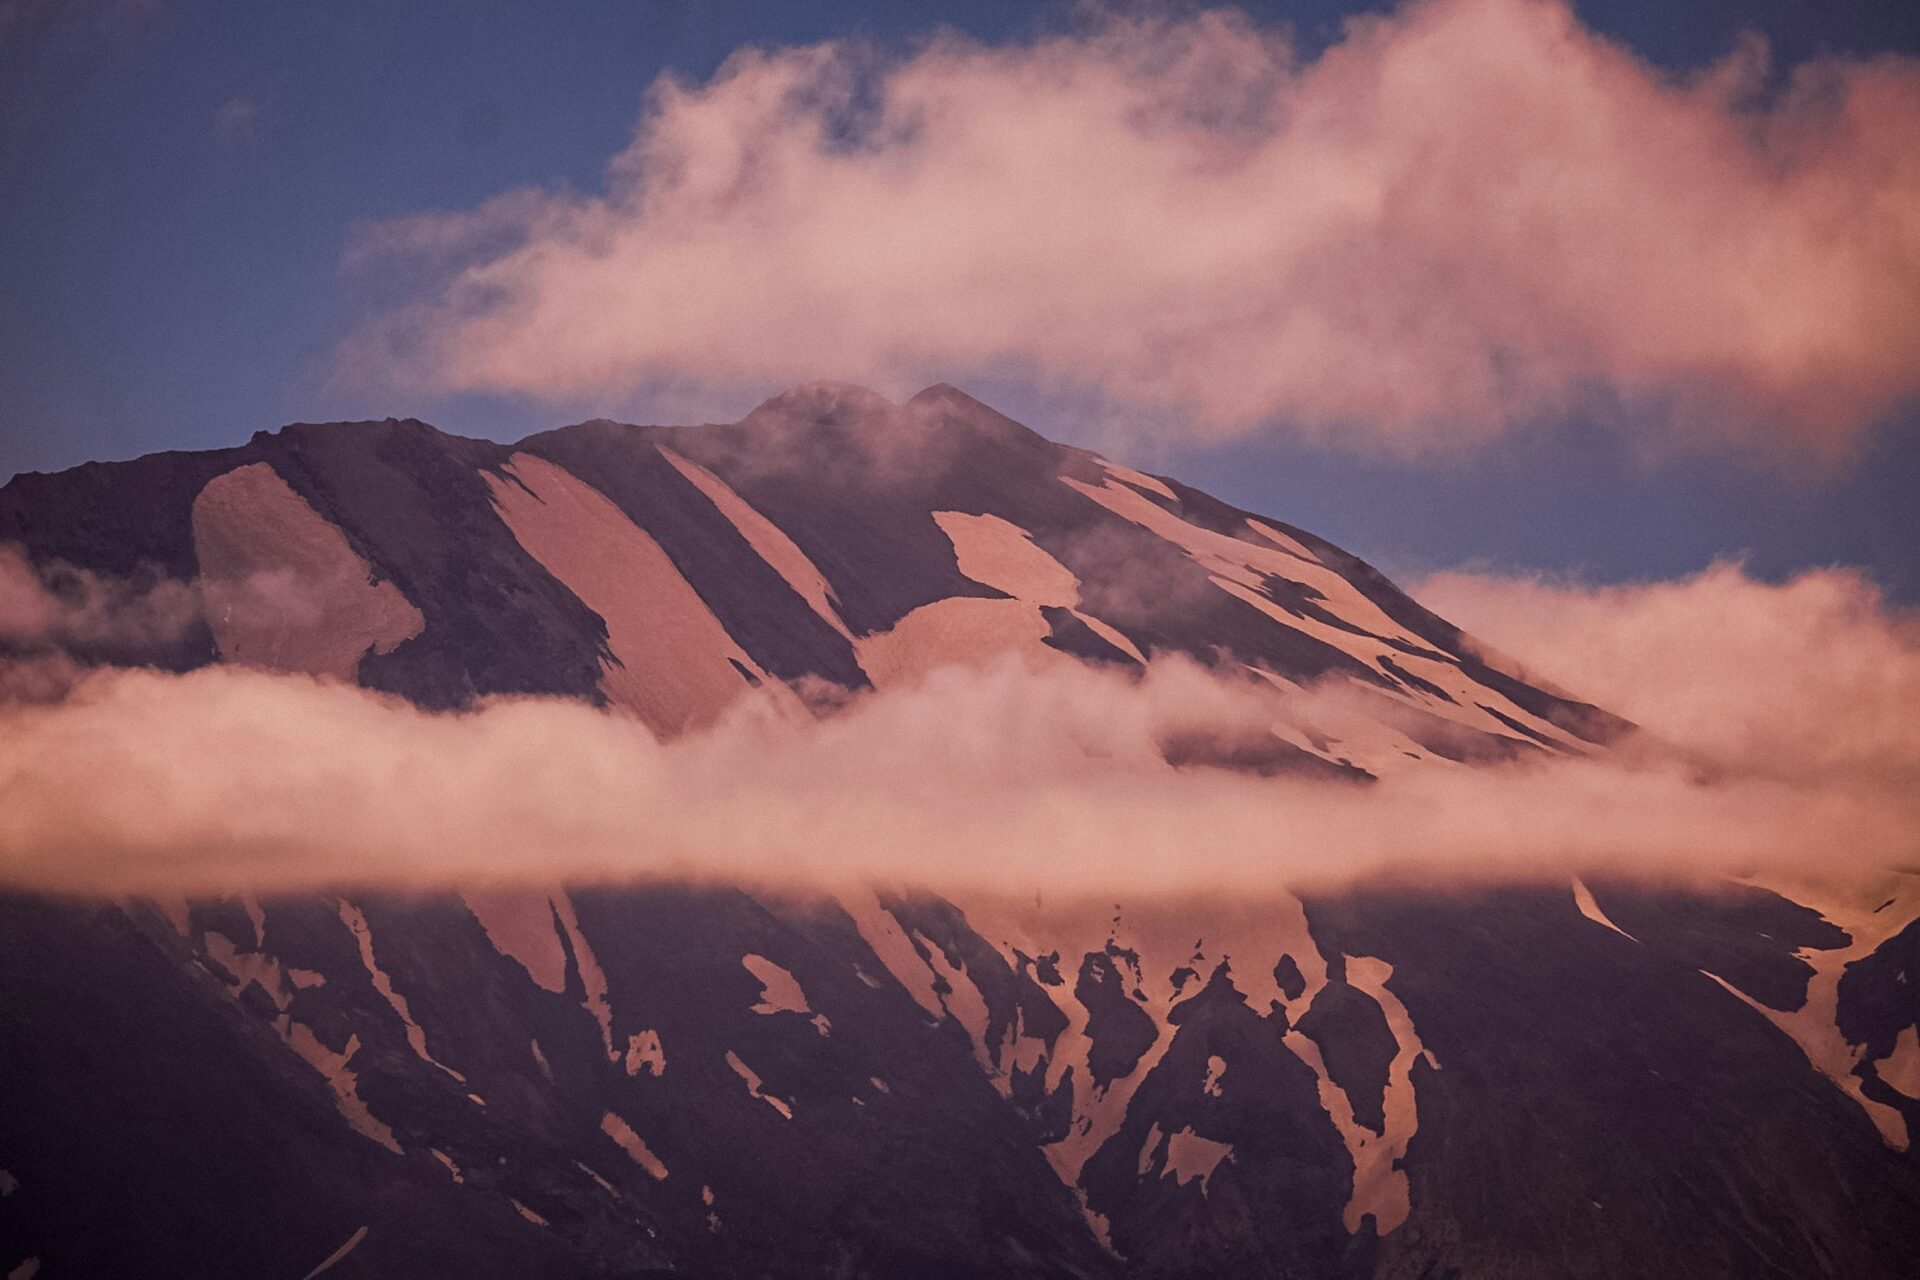 Mount St Helens, Washington